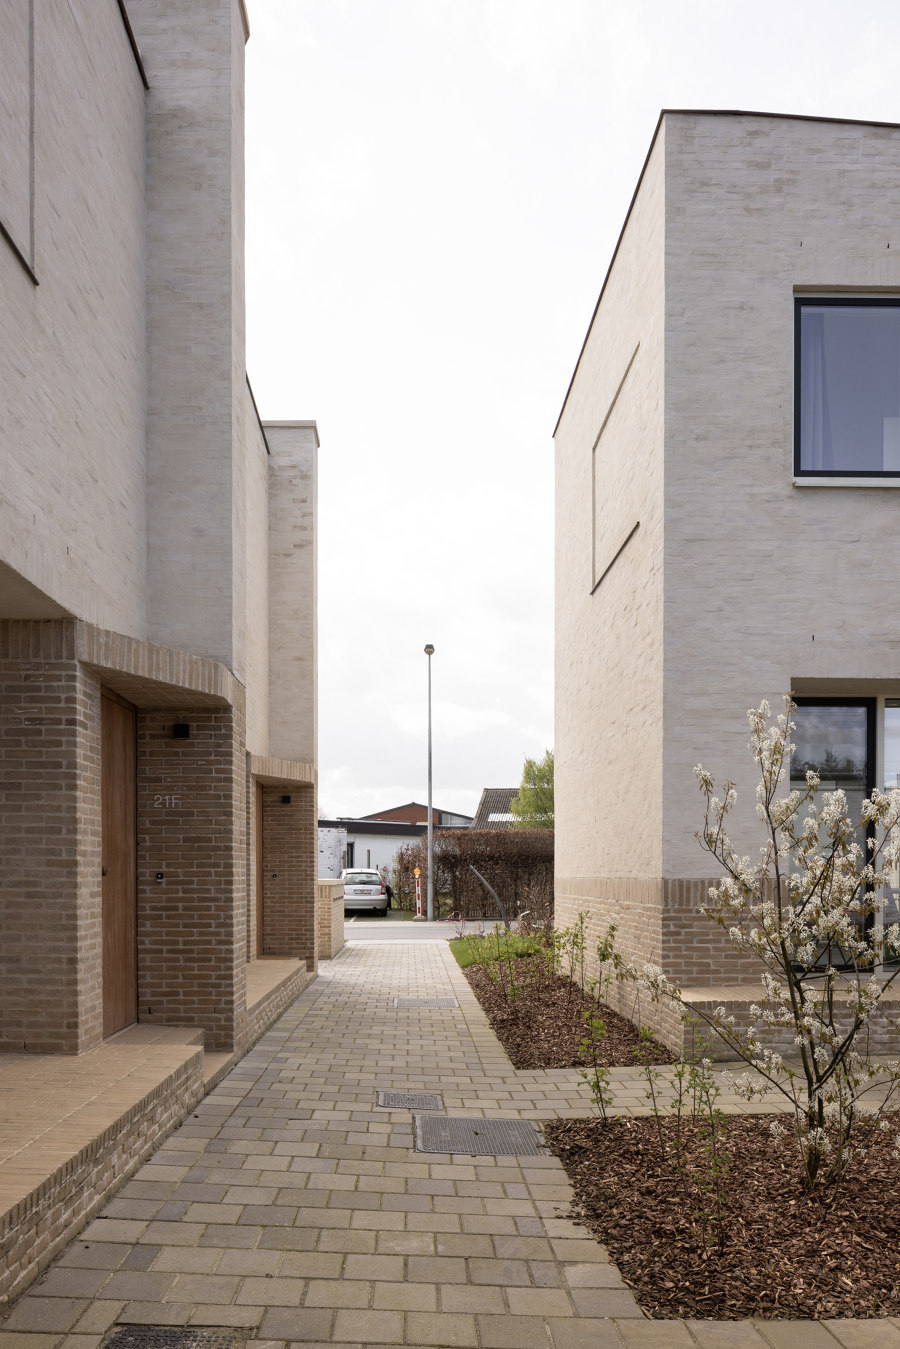 Ten Boomgaard Housing de WE-S architecten | Urbanizaciones